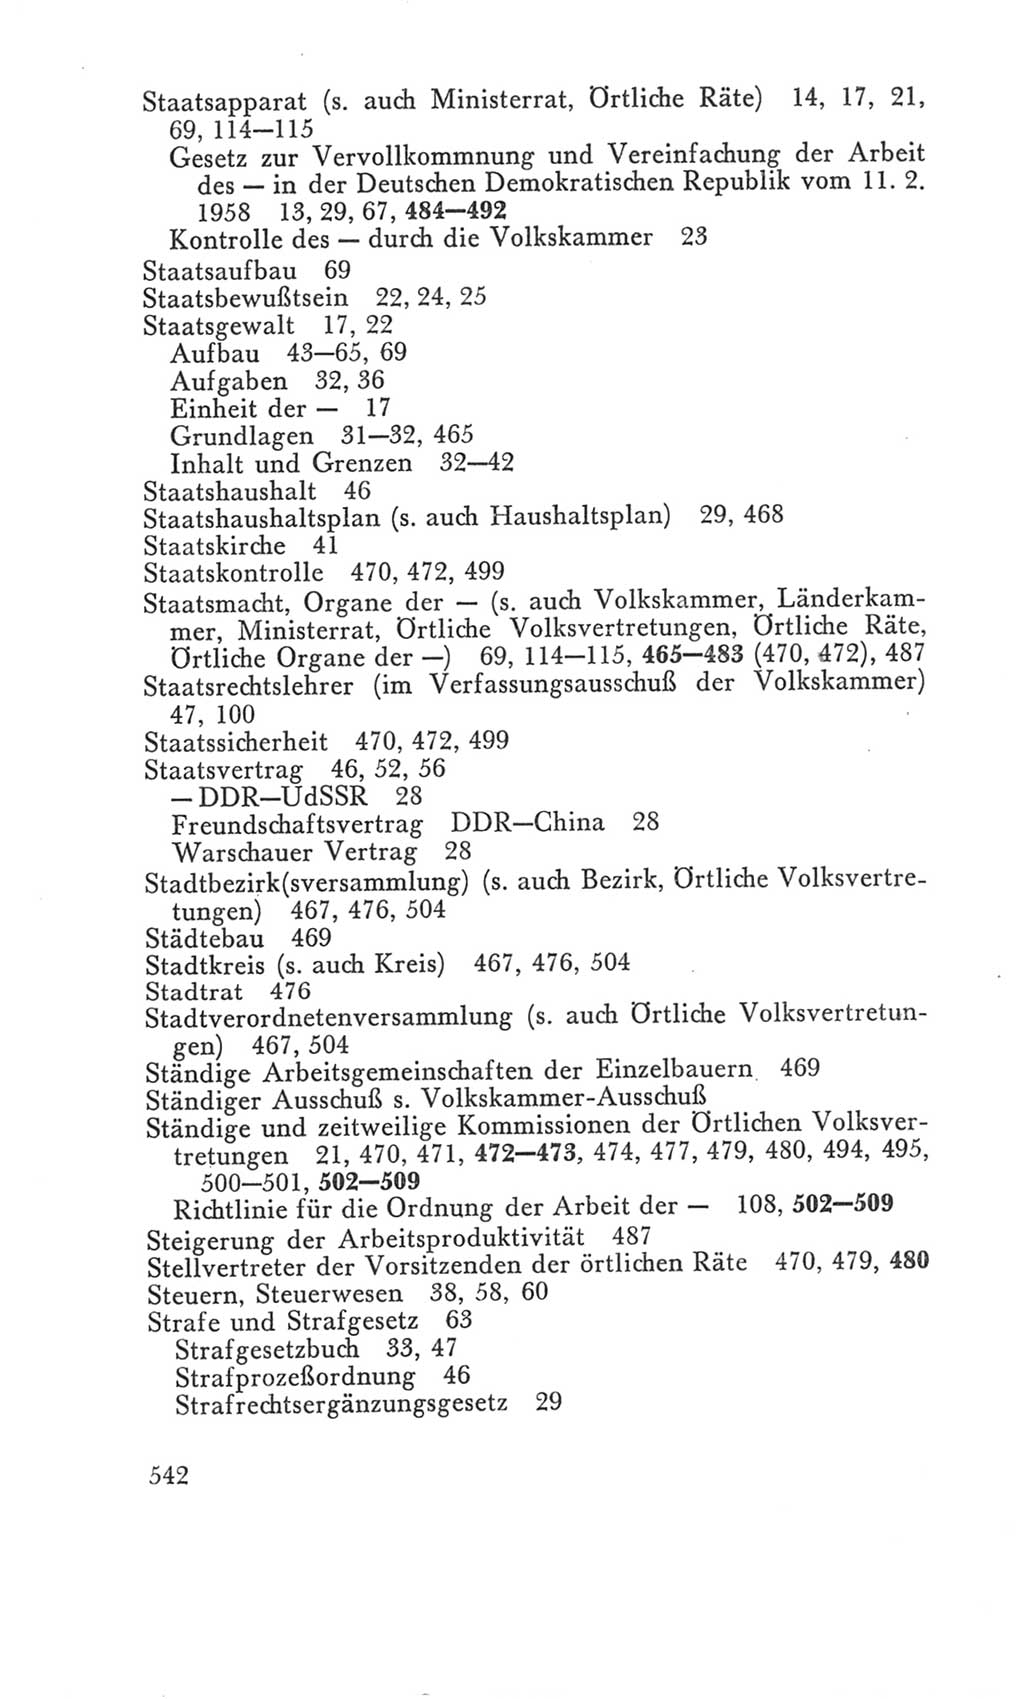 Handbuch der Volkskammer (VK) der Deutschen Demokratischen Republik (DDR), 3. Wahlperiode 1958-1963, Seite 542 (Hdb. VK. DDR 3. WP. 1958-1963, S. 542)